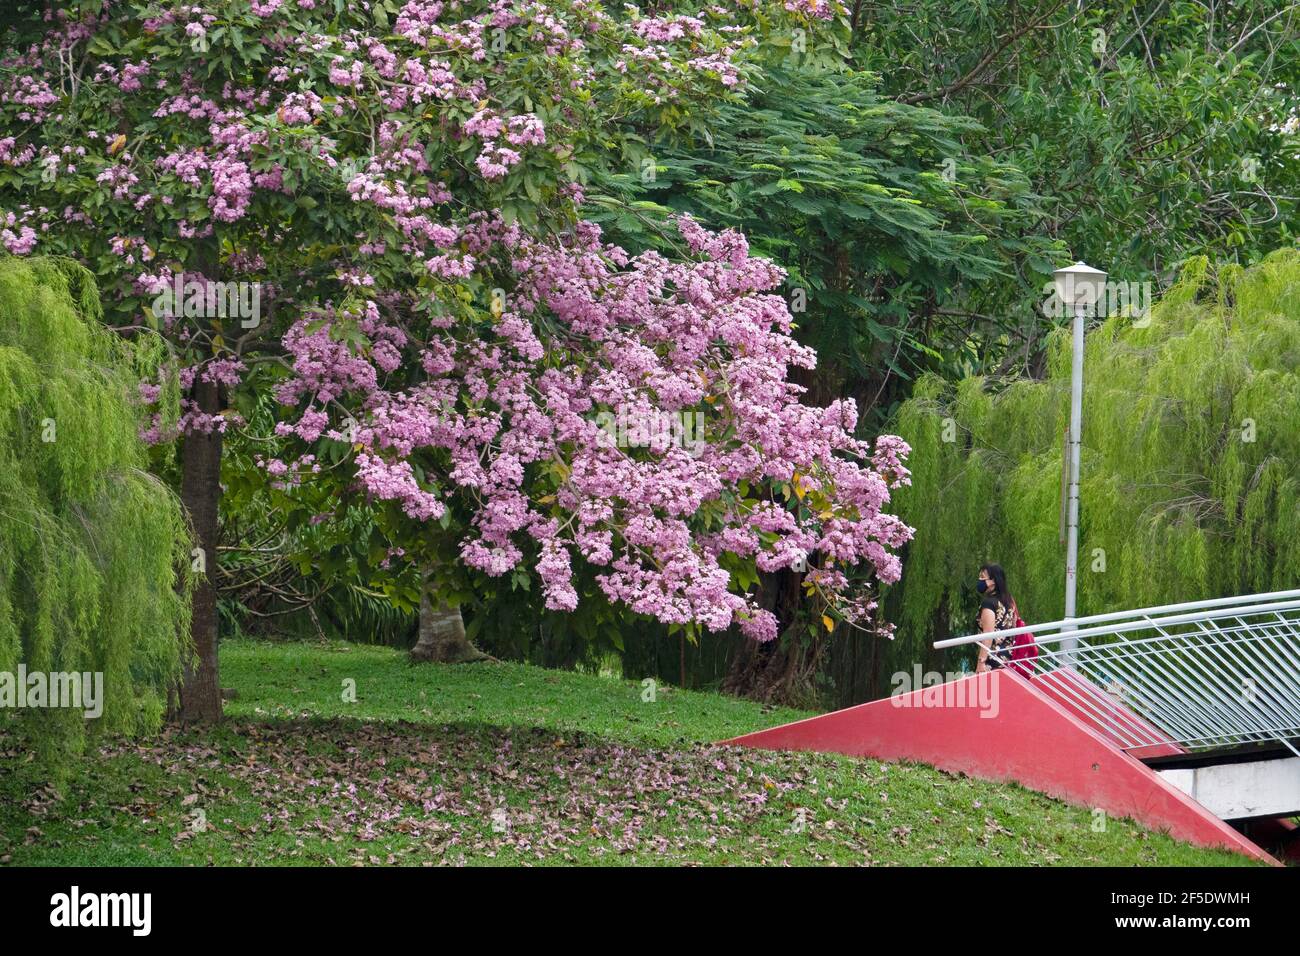 Singapour. 25 mars 2021. Des fleurs de trompettes fleurissent dans le parc Bihan-Ang Mo Kio de Singapour le 25 mars 2021. Crédit: Puis Chih Wey/Xinhua/Alay Live News Banque D'Images